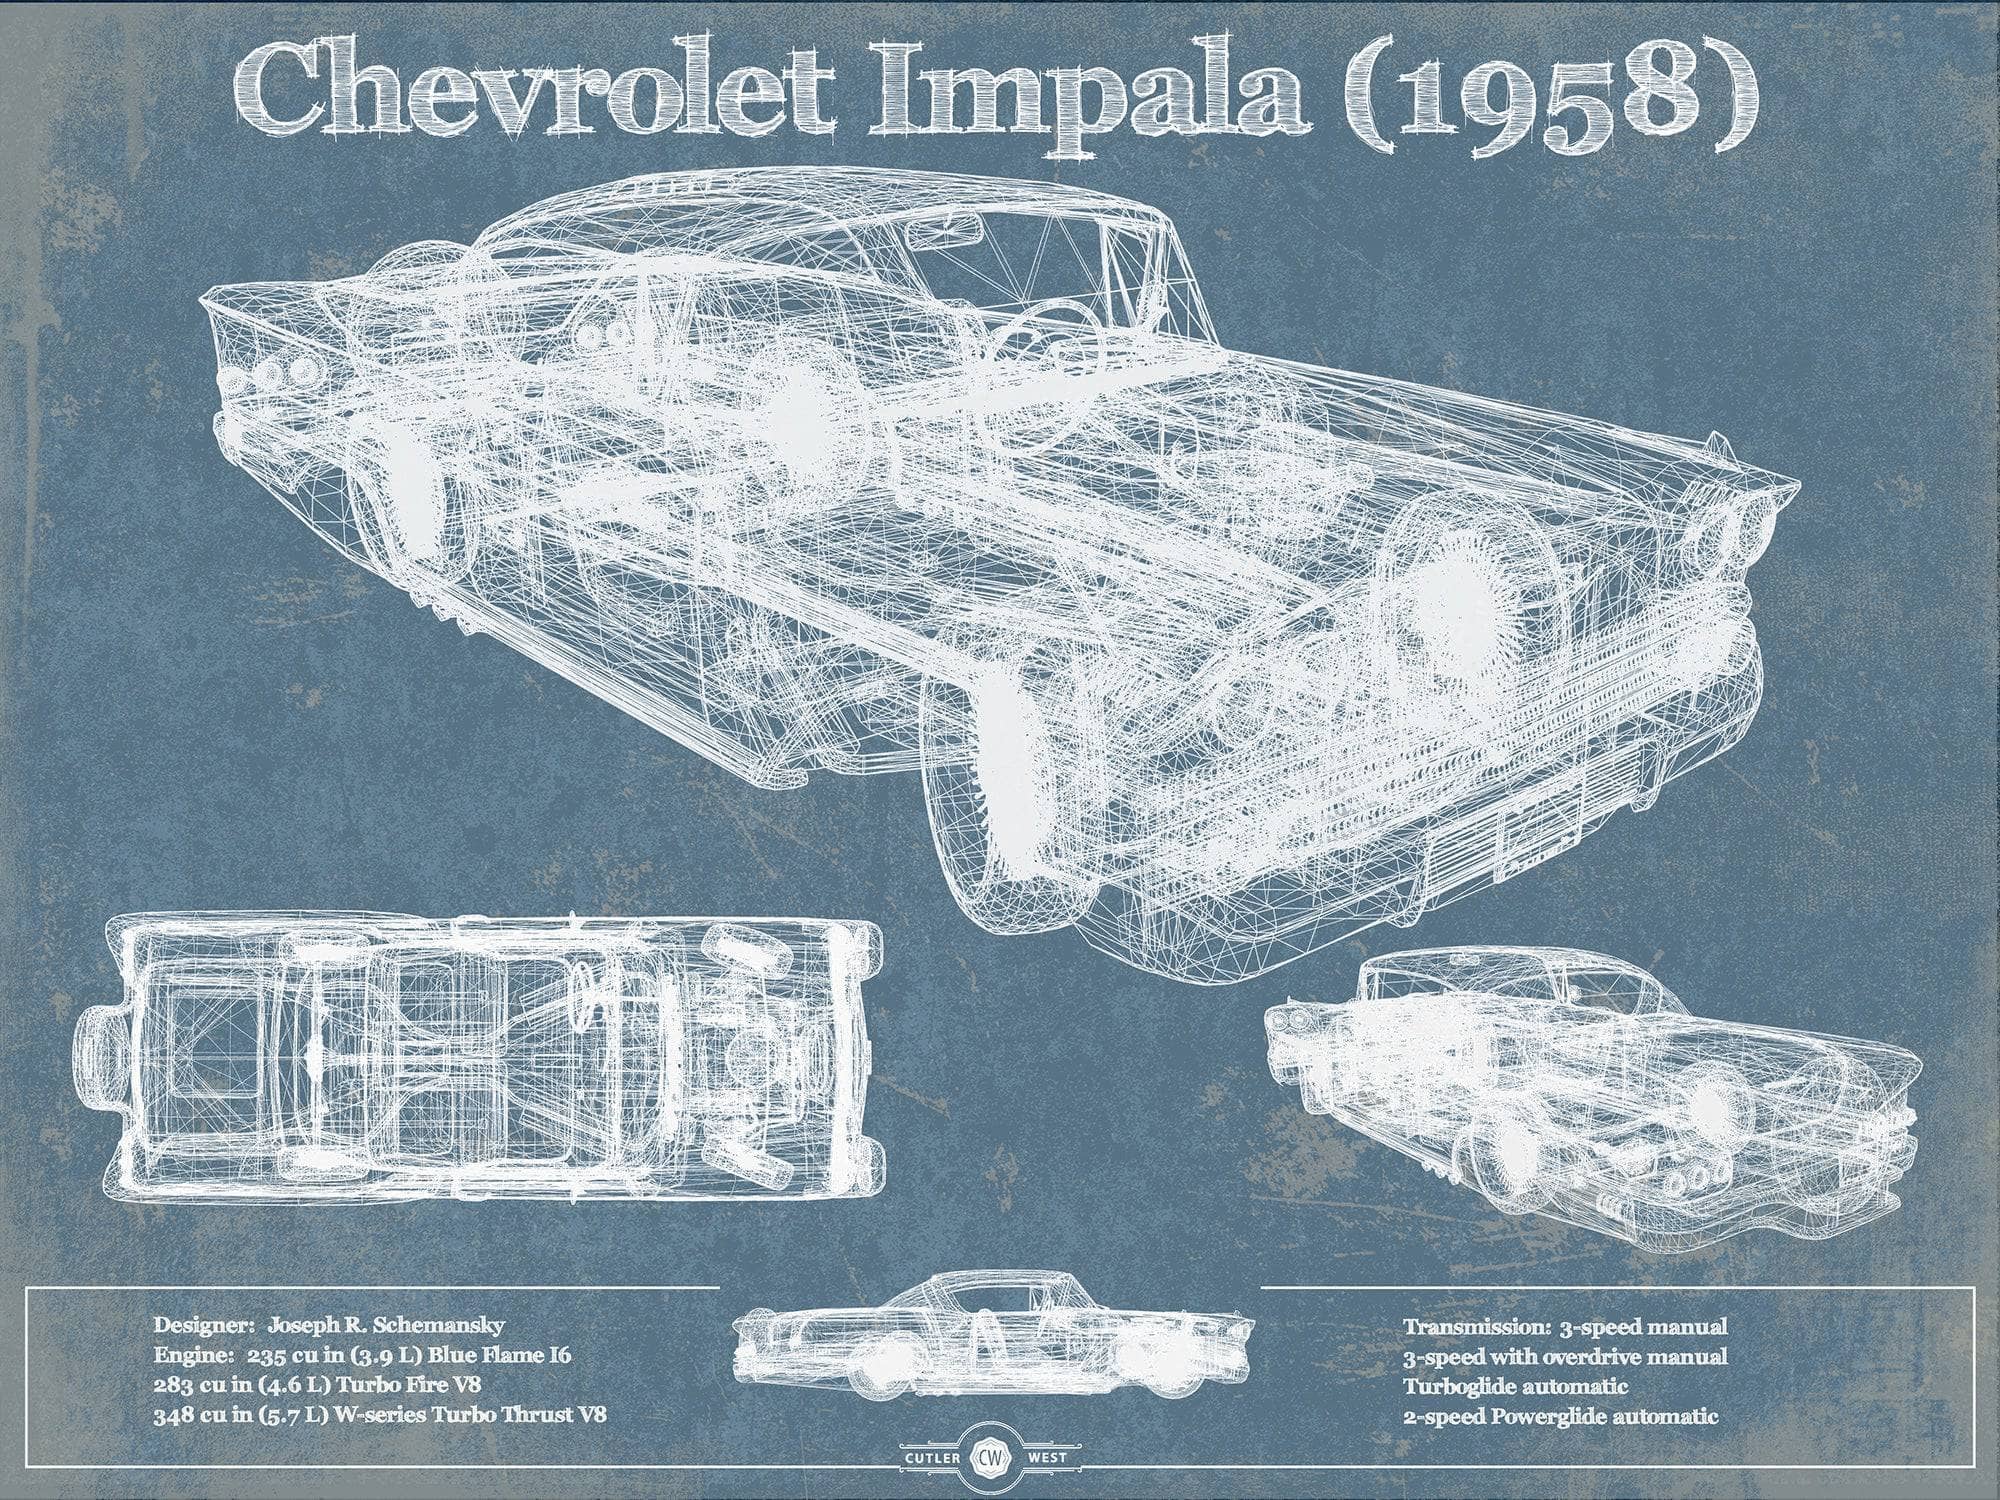 Cutler West Chevrolet Collection 1958 Chevrolet Impala Blueprint Vintage Auto Print